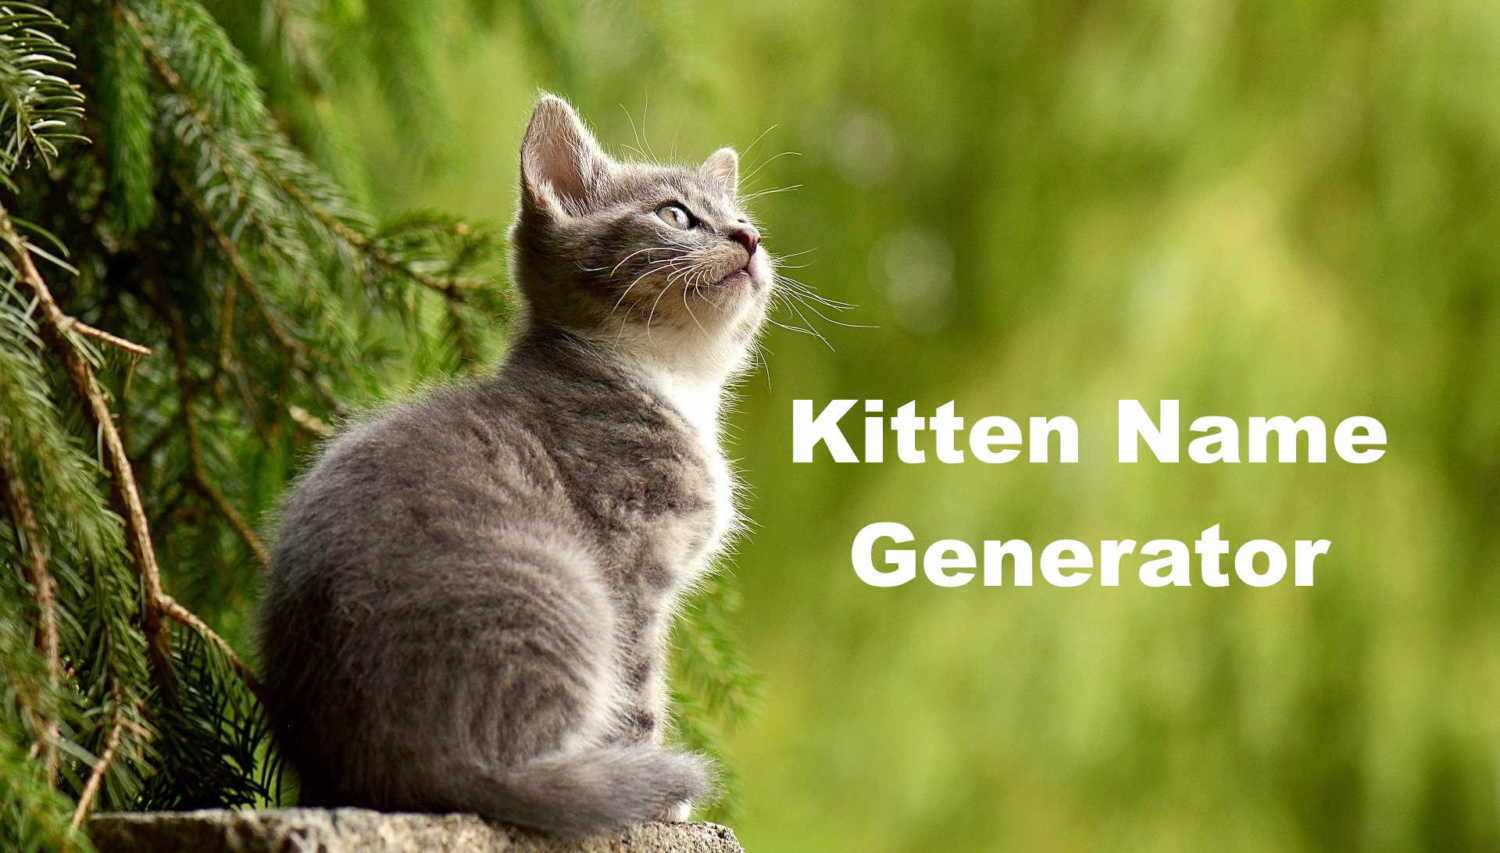 Kitten Name Generator - Random Name Generators